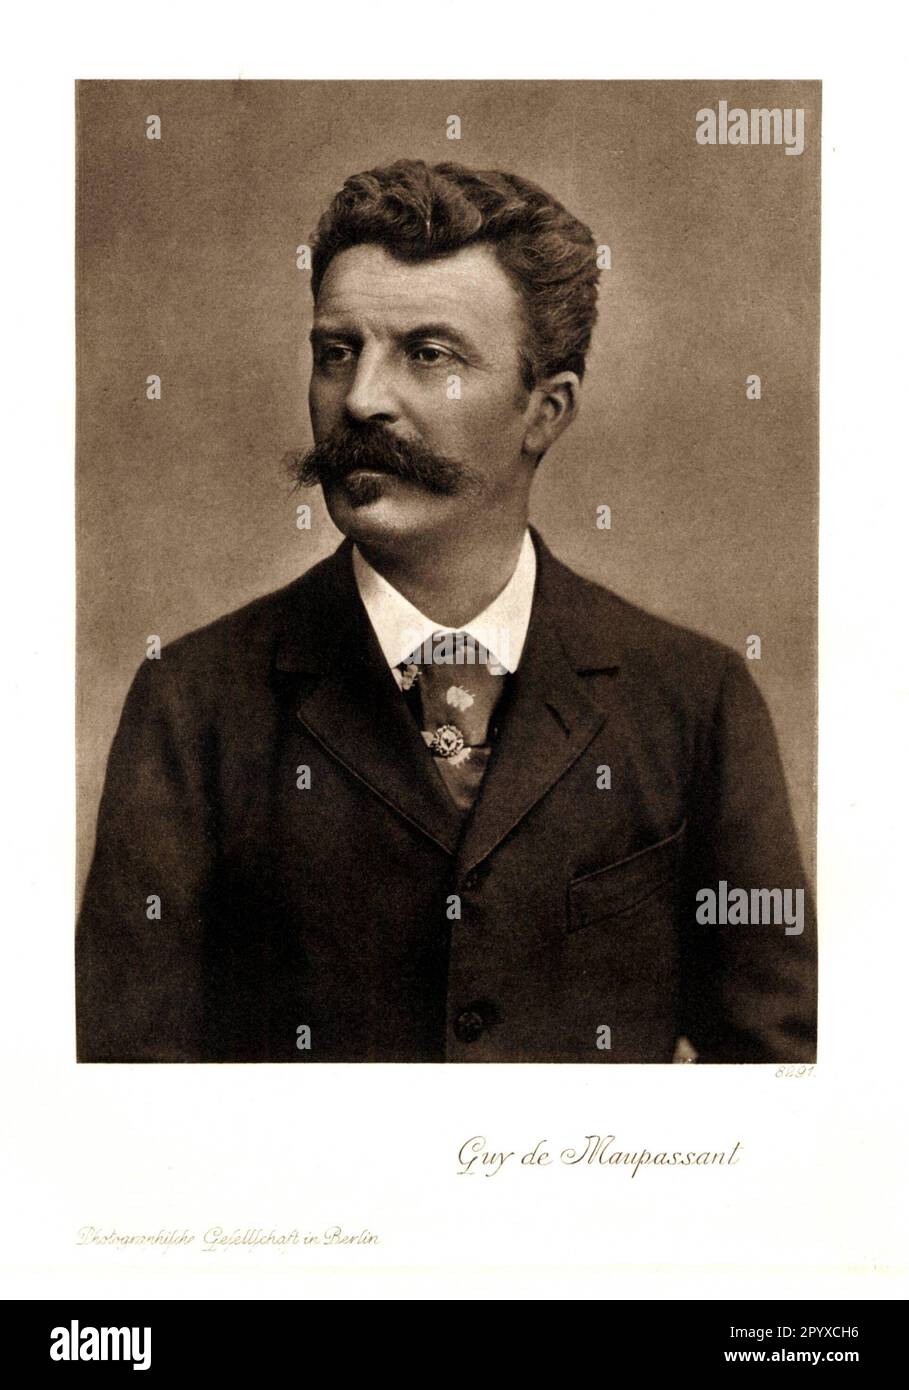 Guy de Maupassant (1850-1893), französischer Schriftsteller. Foto. Foto: Heliogravure, Corpus Imaginum, Hanfstaengl Collection. [Maschinelle Übersetzung] Stockfoto